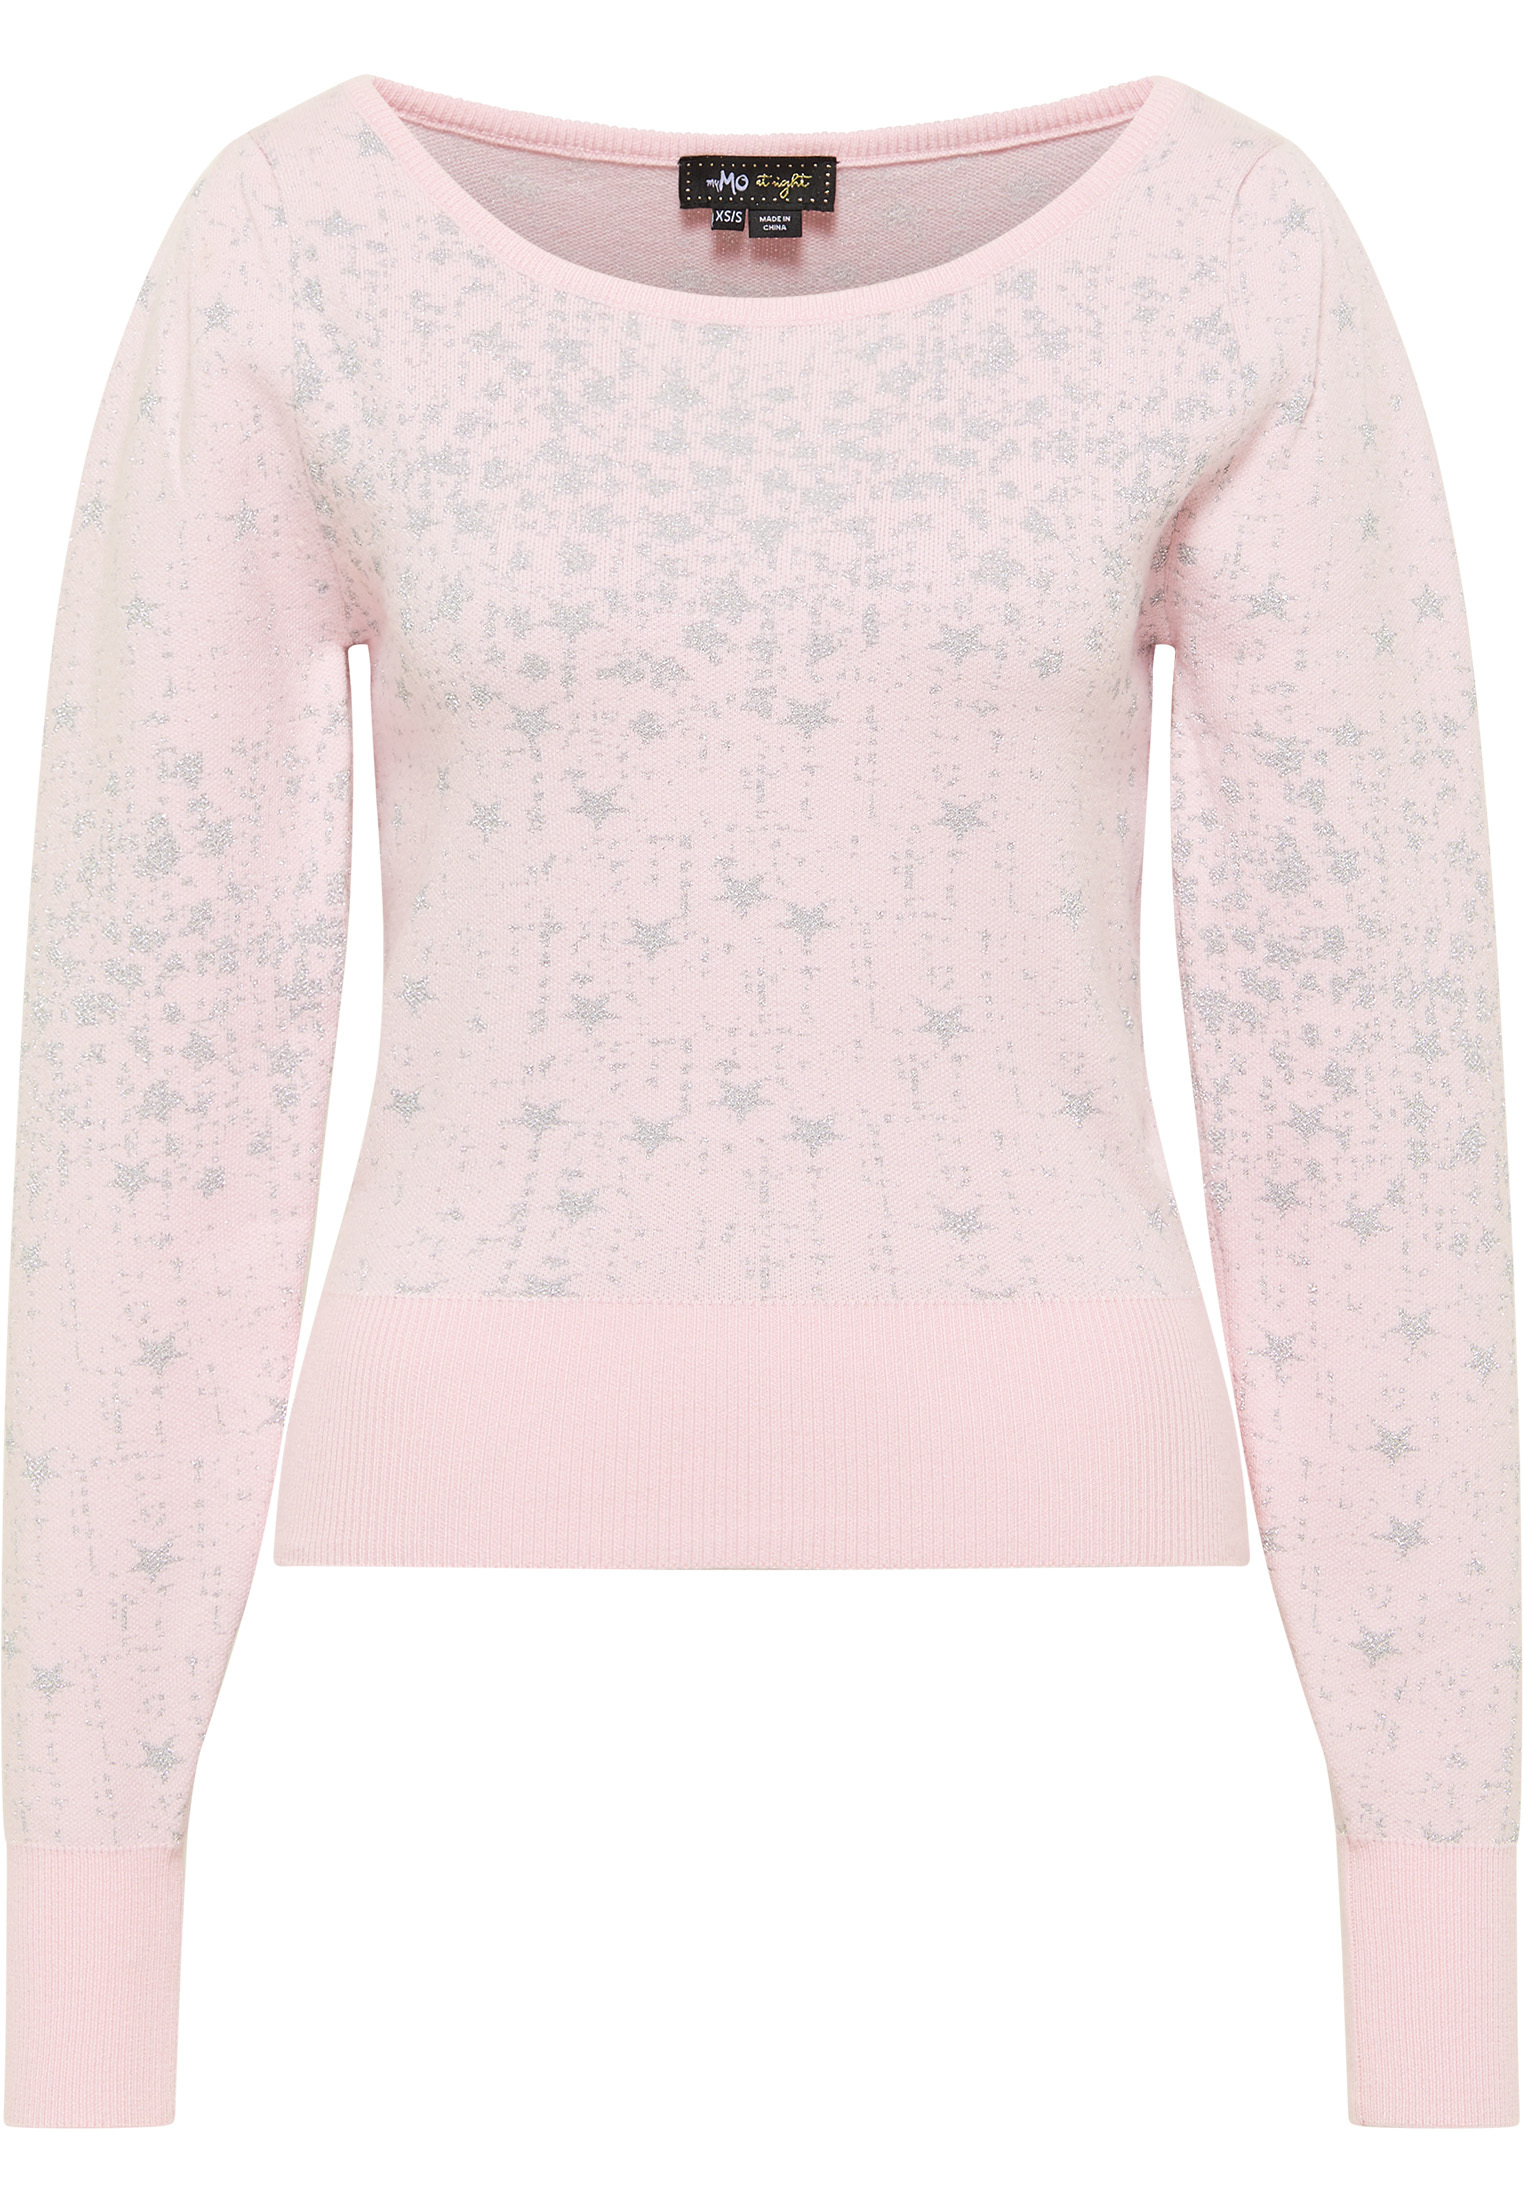 Odzież Plus size myMo at night Sweter w kolorze Pastelowy Różm 